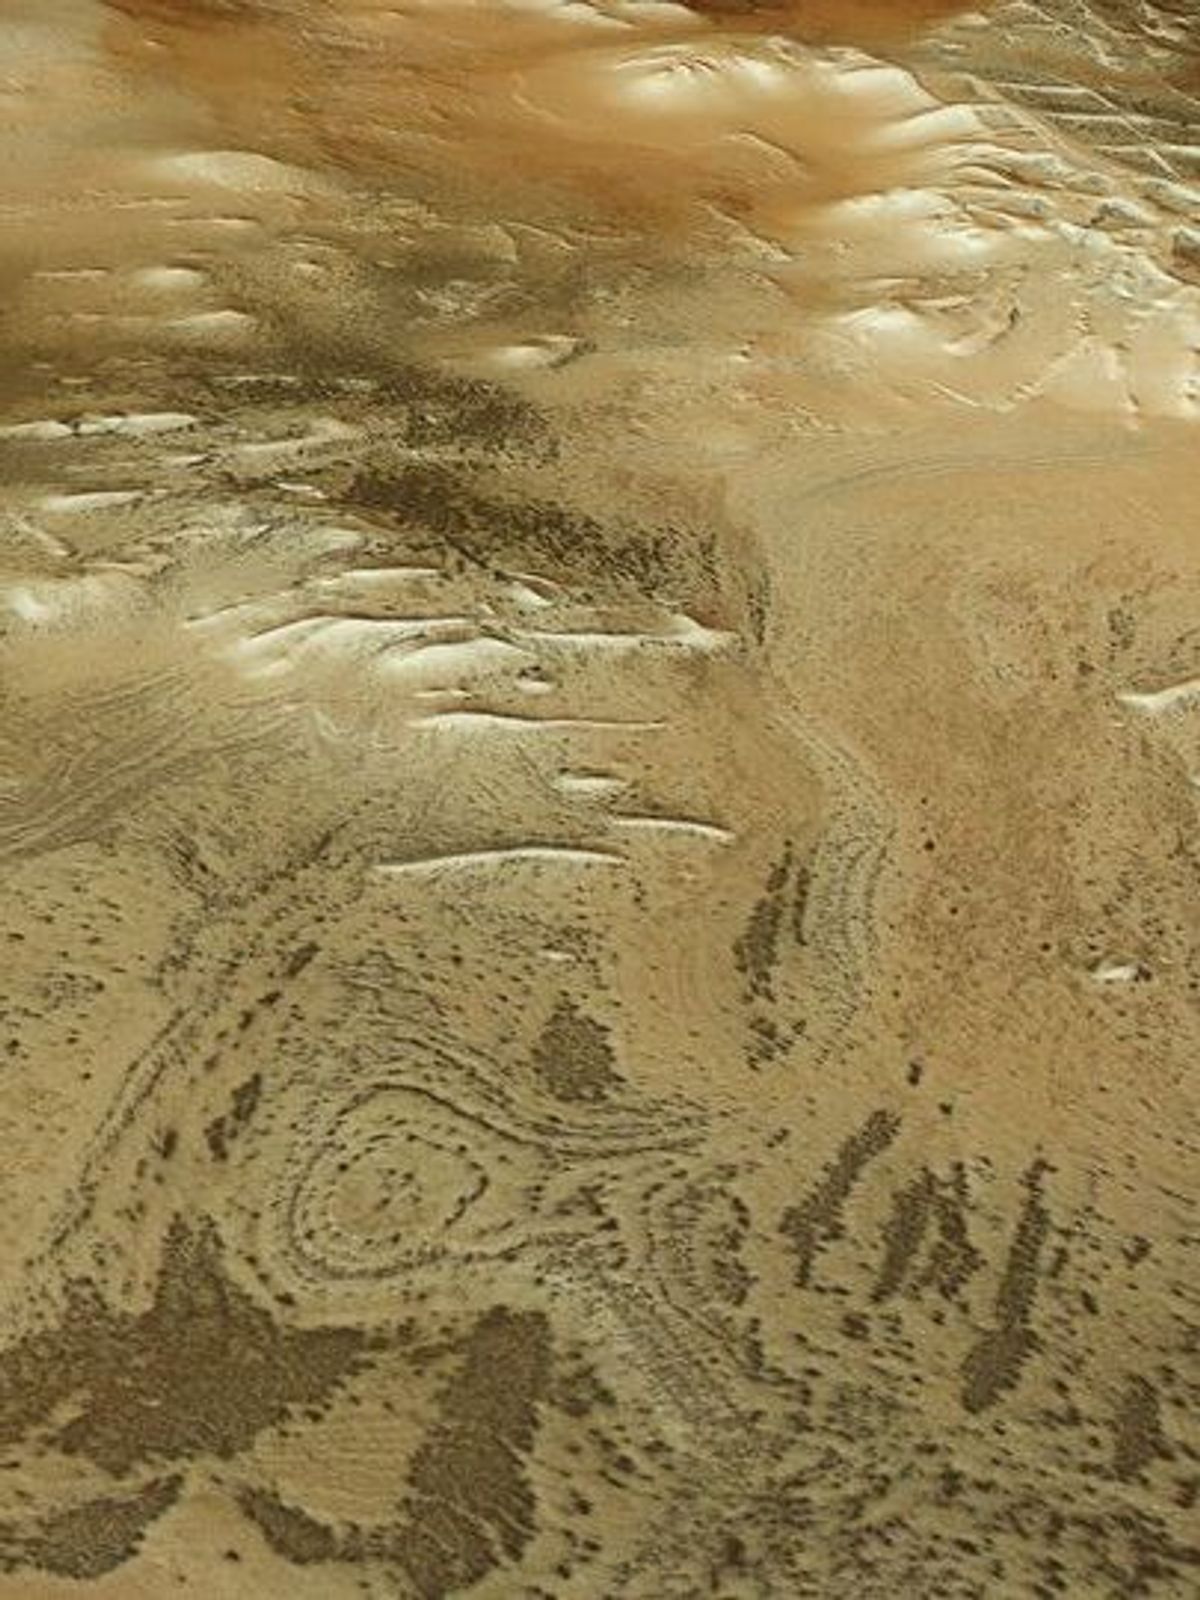 Perspektivische Ansicht der ESA von der Inka-Stadt auf dem Mars.